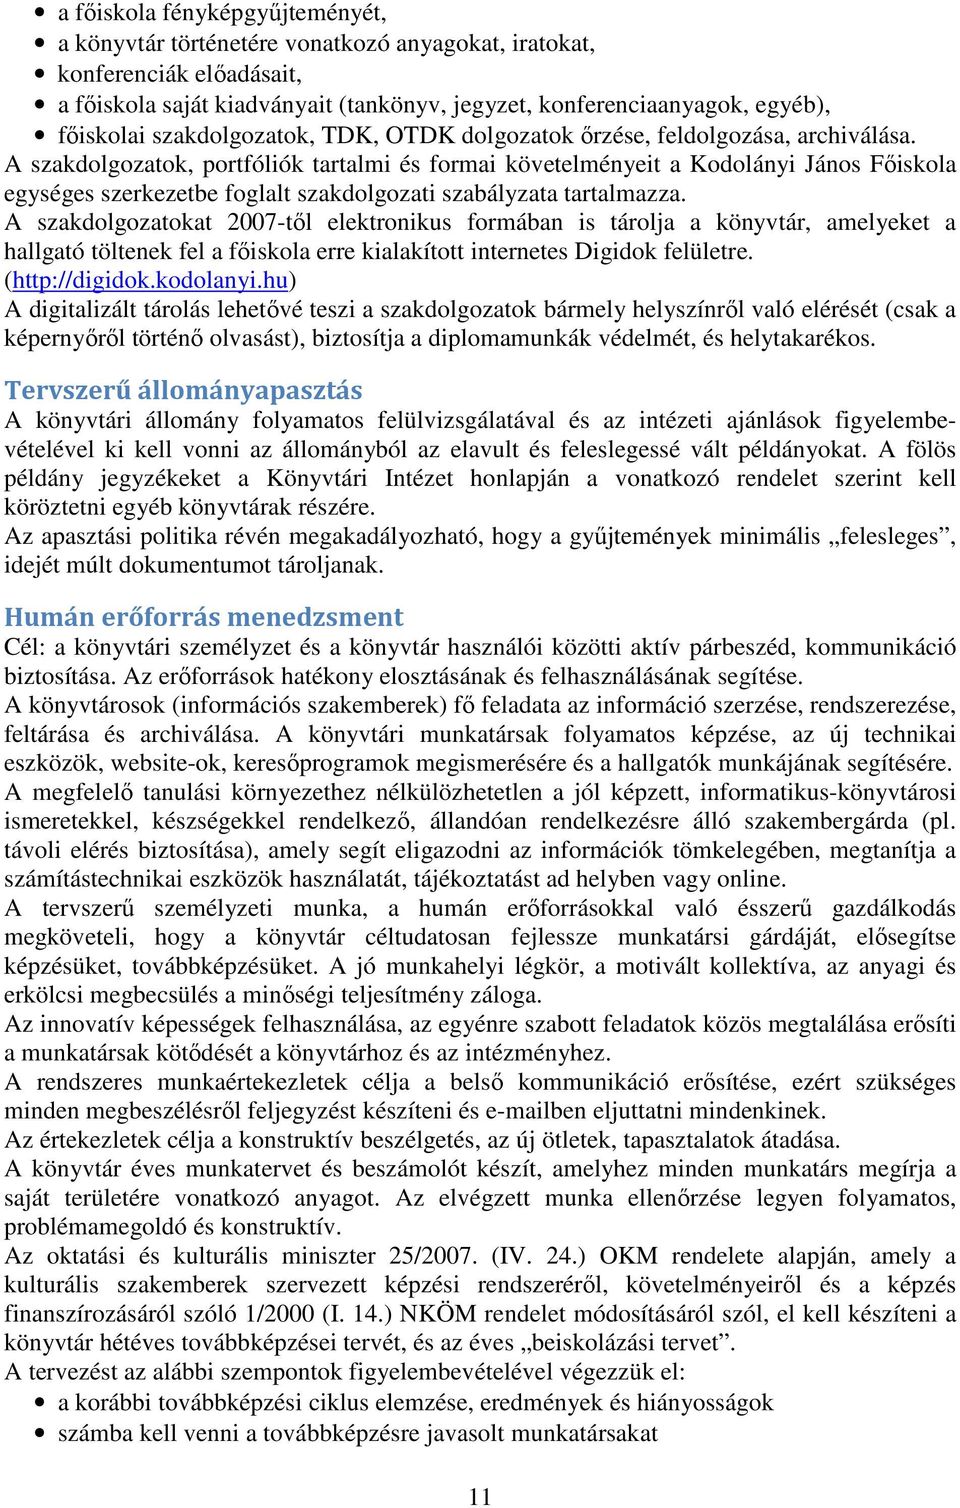 A szakdolgozatok, portfóliók tartalmi és formai követelményeit a Kodolányi János Fıiskola egységes szerkezetbe foglalt szakdolgozati szabályzata tartalmazza.